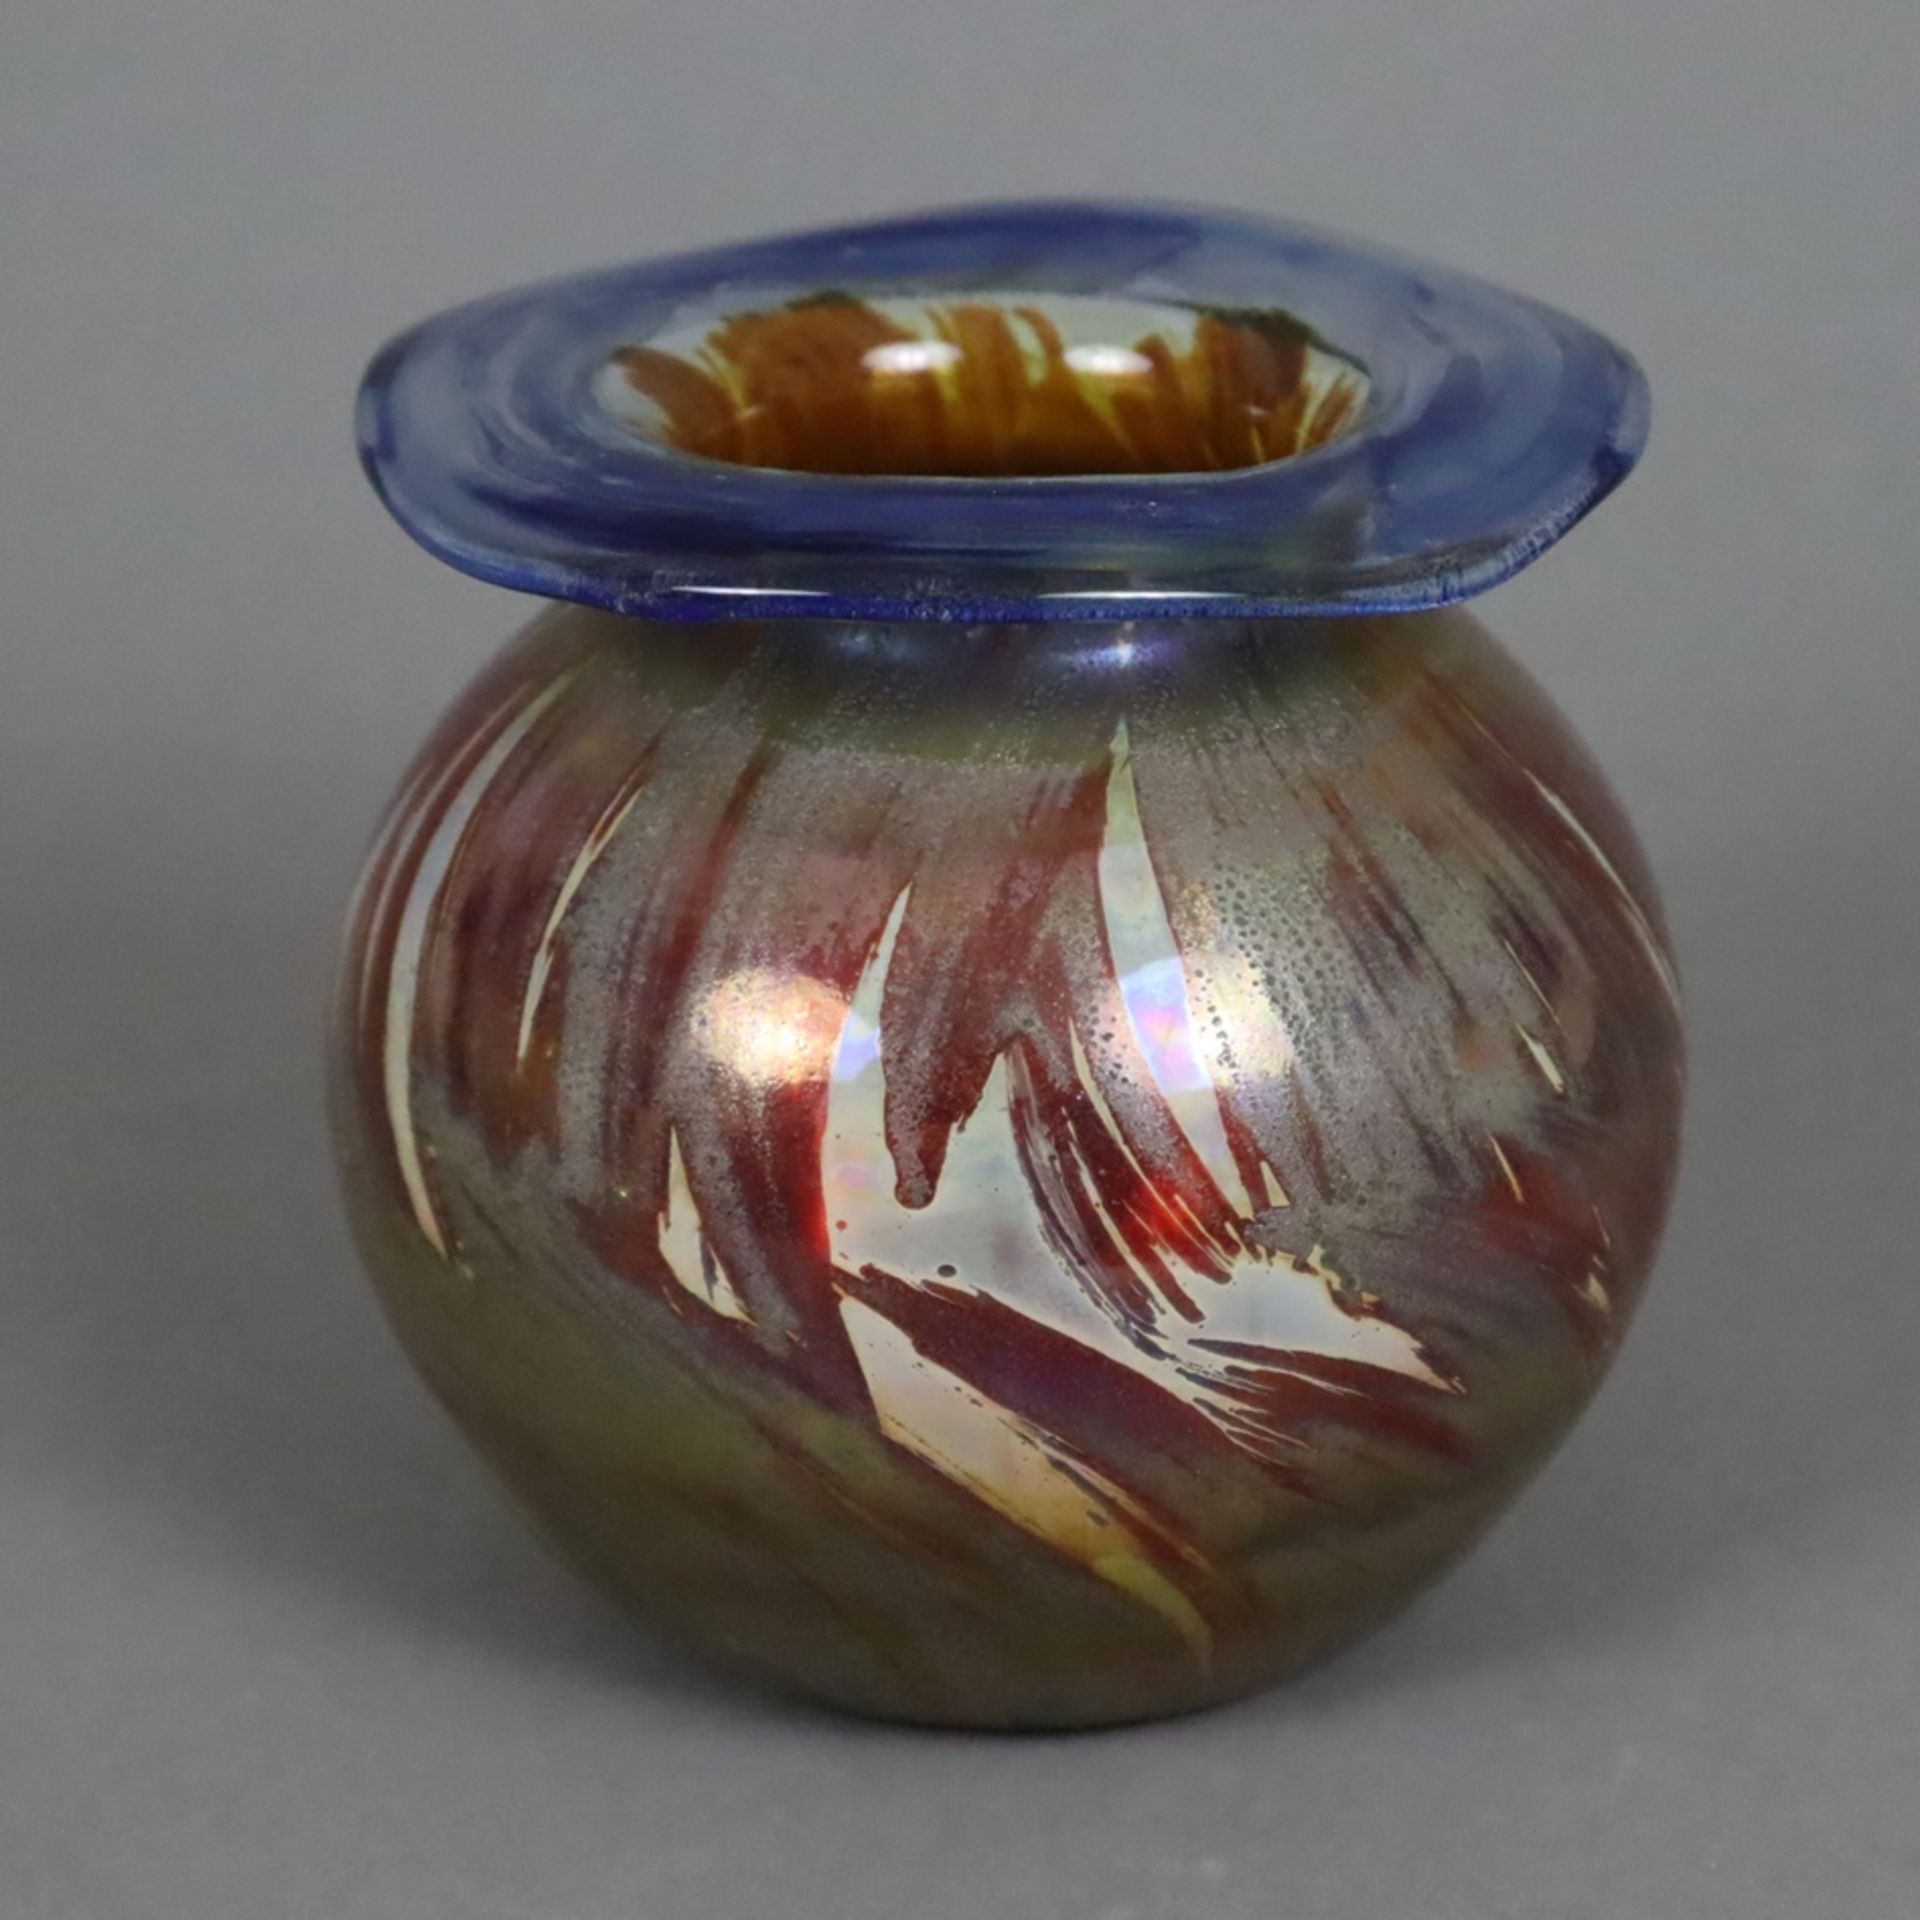 Kleine Jugendstil-Vase - irisierendes Glas, teils geätzte Oberfläche, kugelförmiger Korpus mit ausg